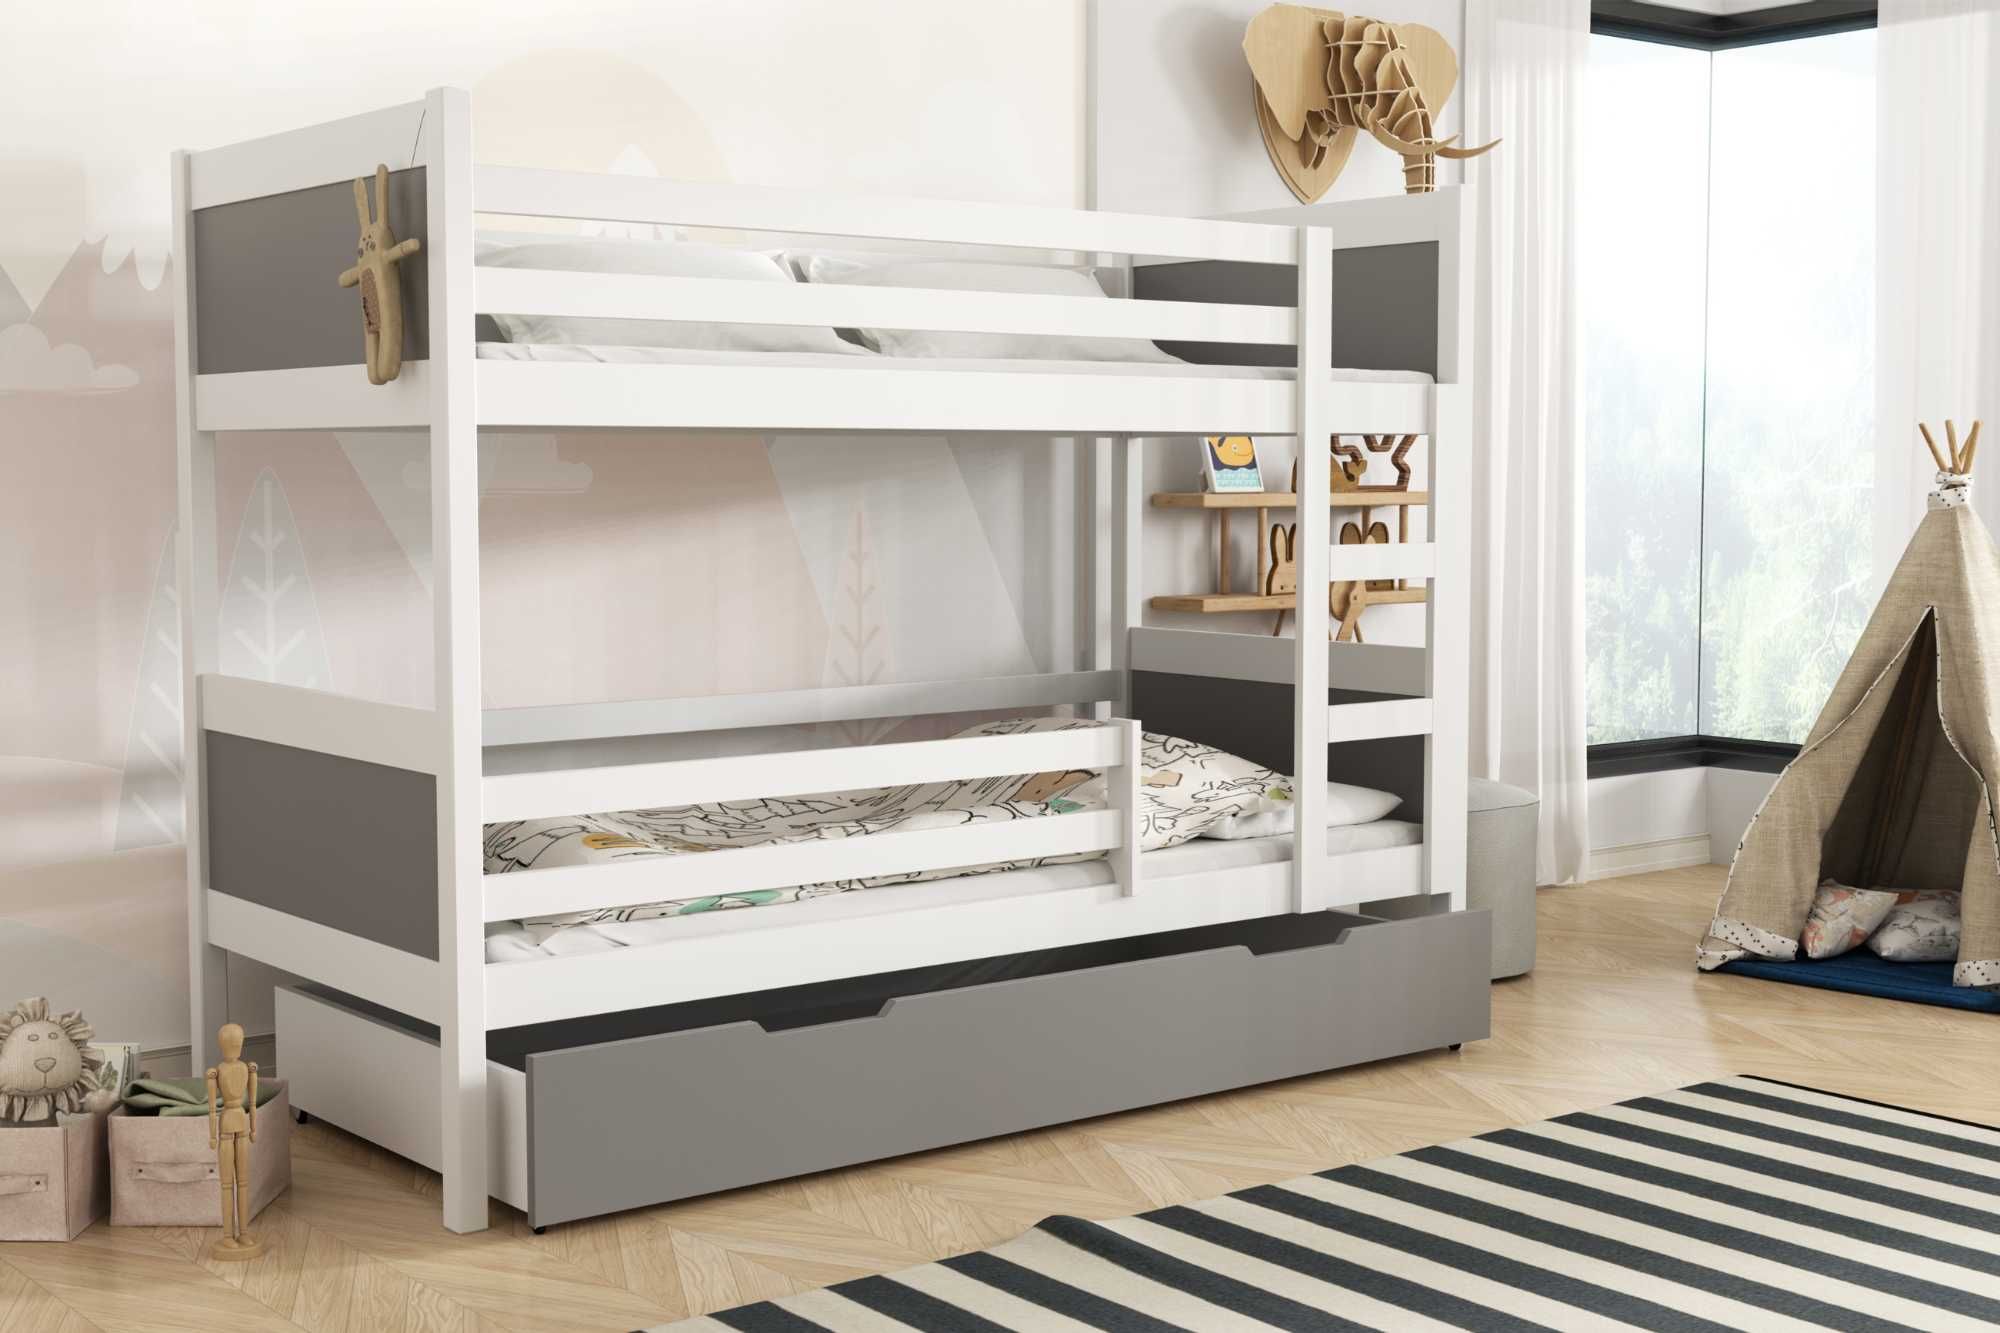 Drewniane łóżko piętrowe dla dzieci LEON - szuflada